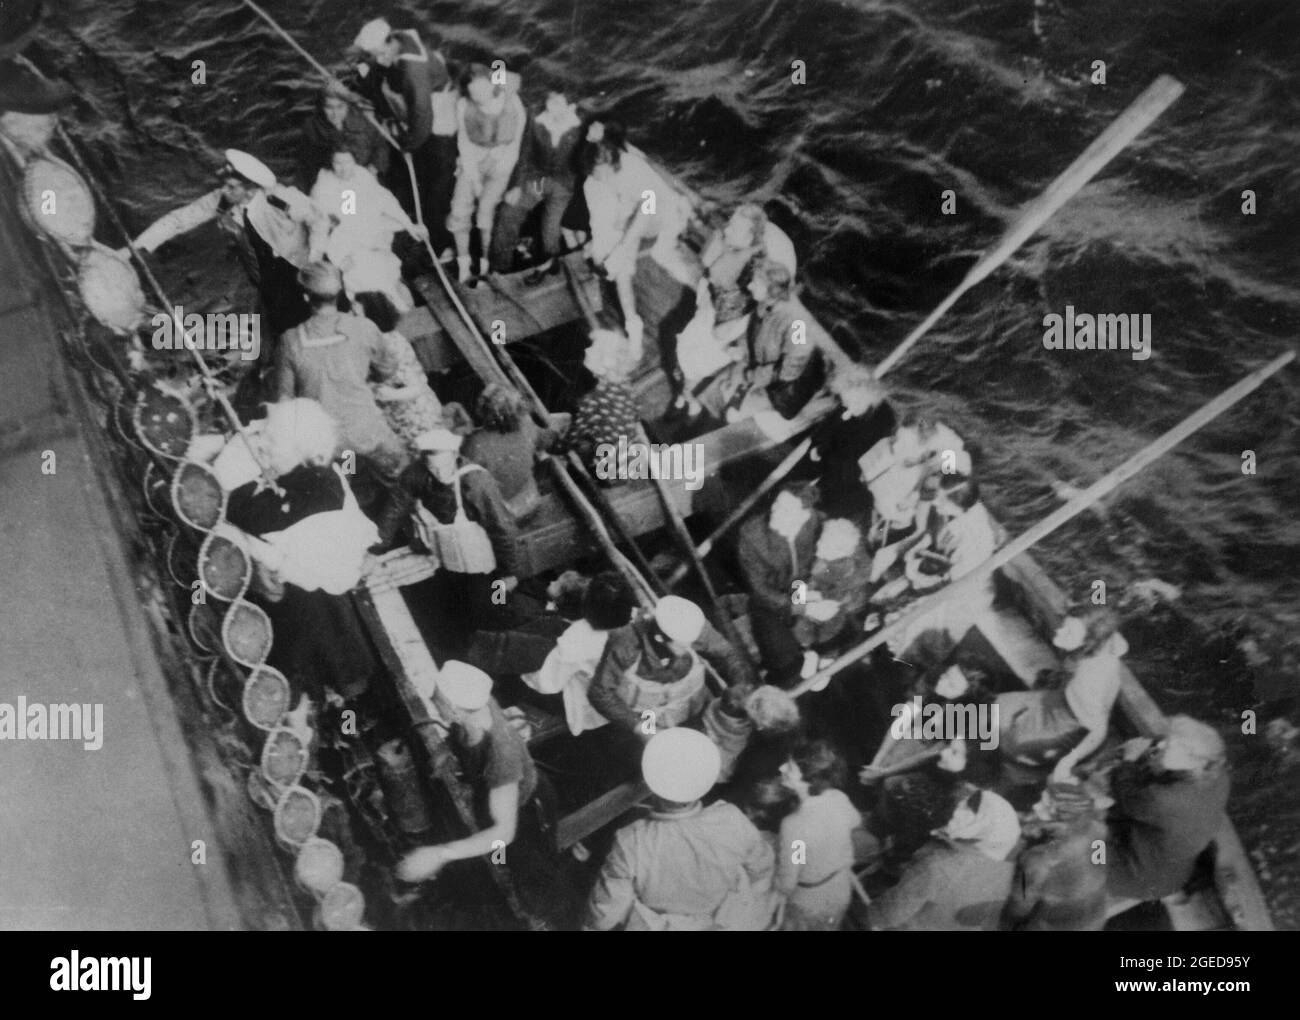 NORDATLANTIK - 04. September 1939 - eine ältere Frau wird an Bord des amerikanischen Frachtschiffes City of Flint gehisst, nachdem sie die Nacht in einem Stockfoto